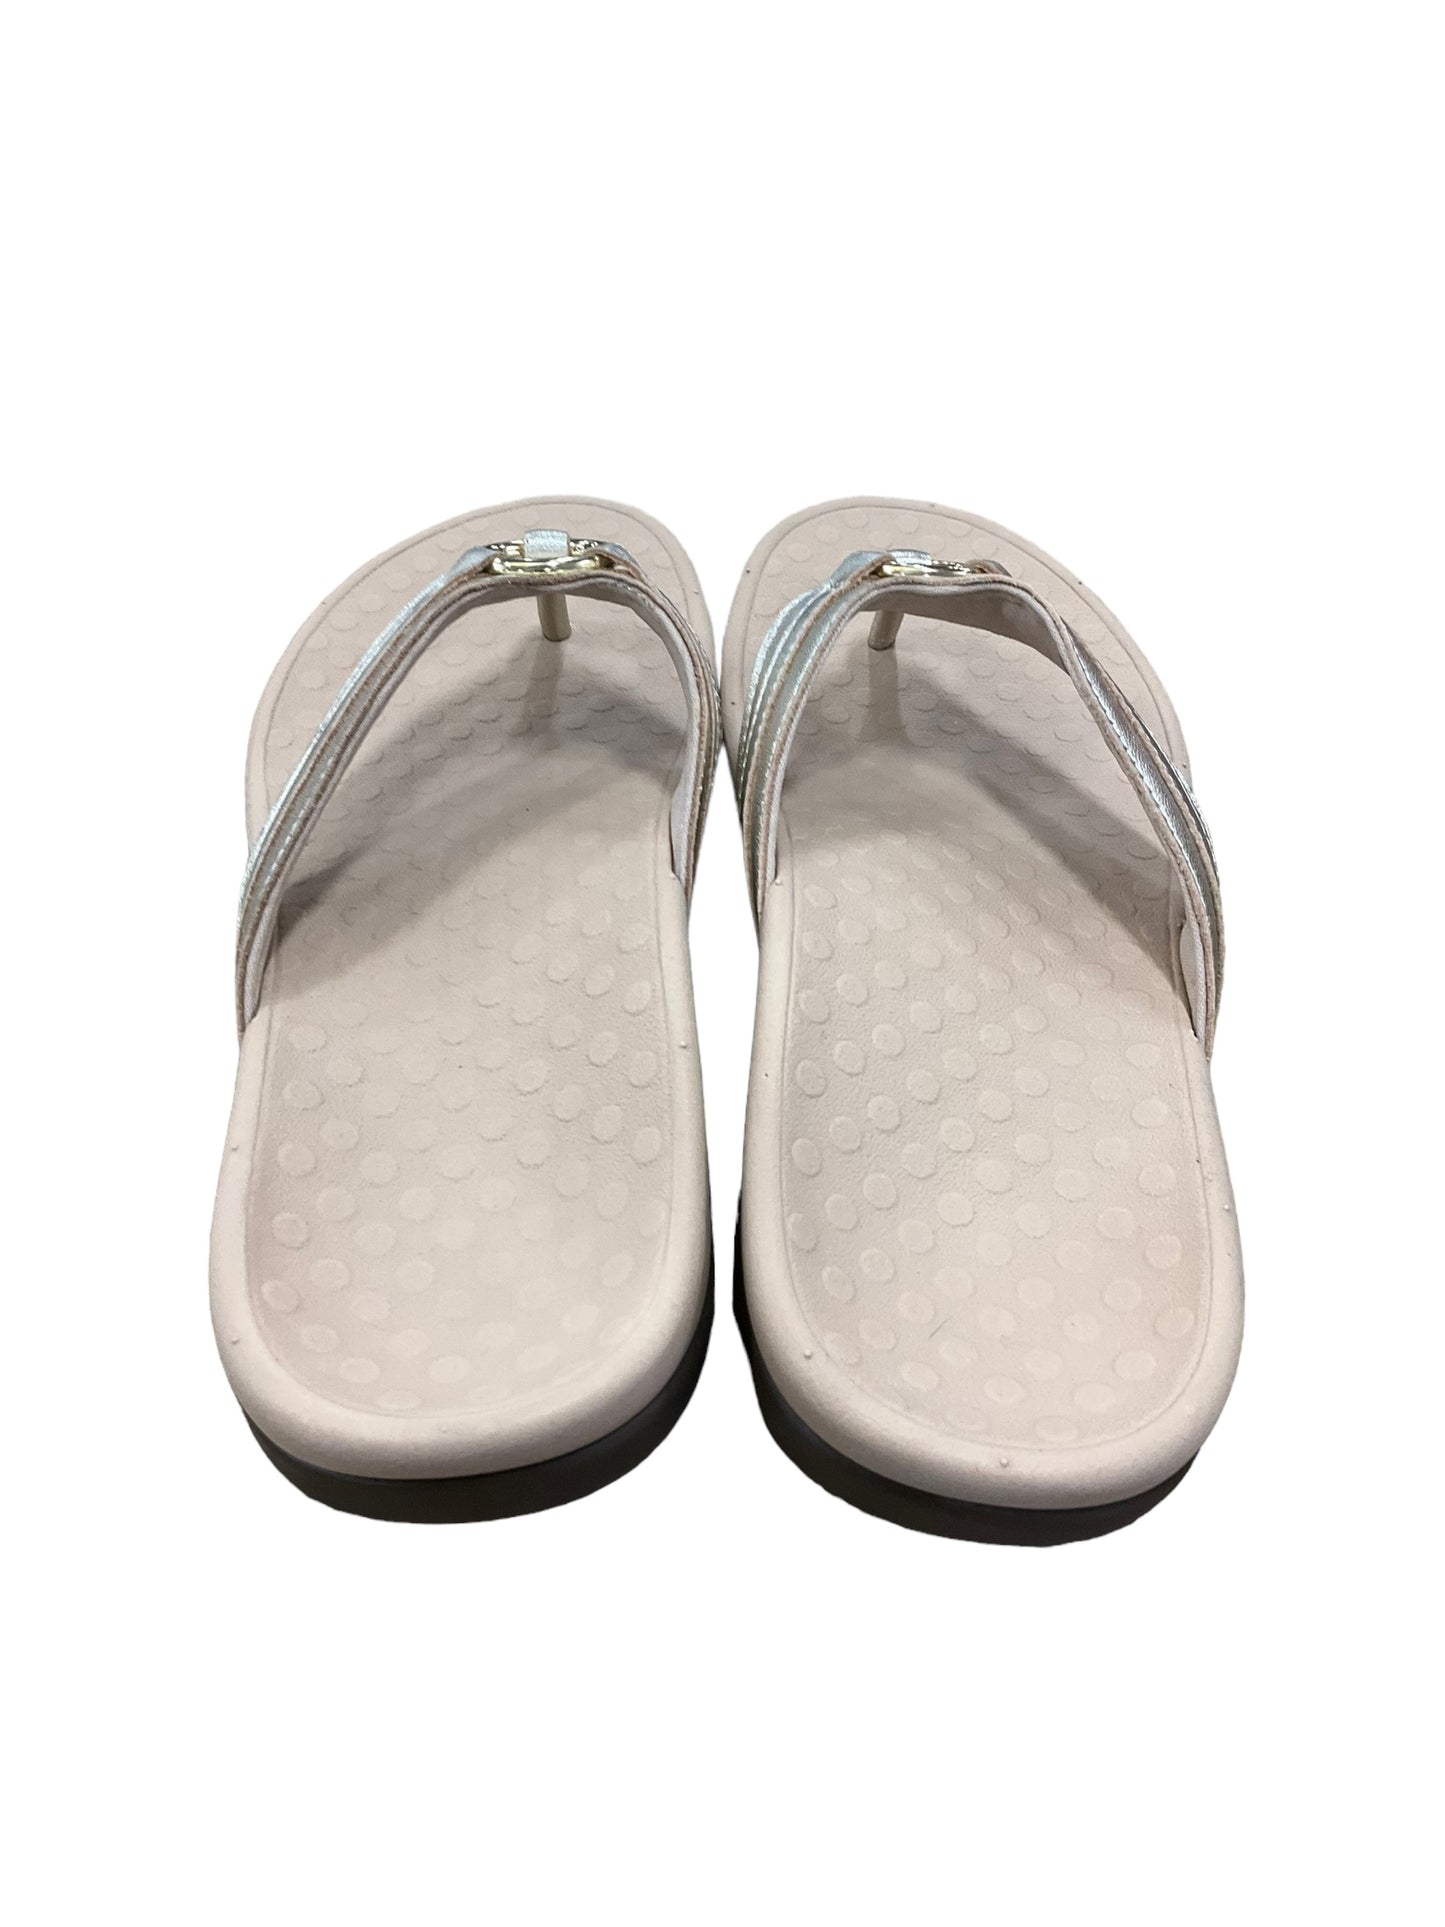 Sandals Flip Flops By Vionic  Size: 7